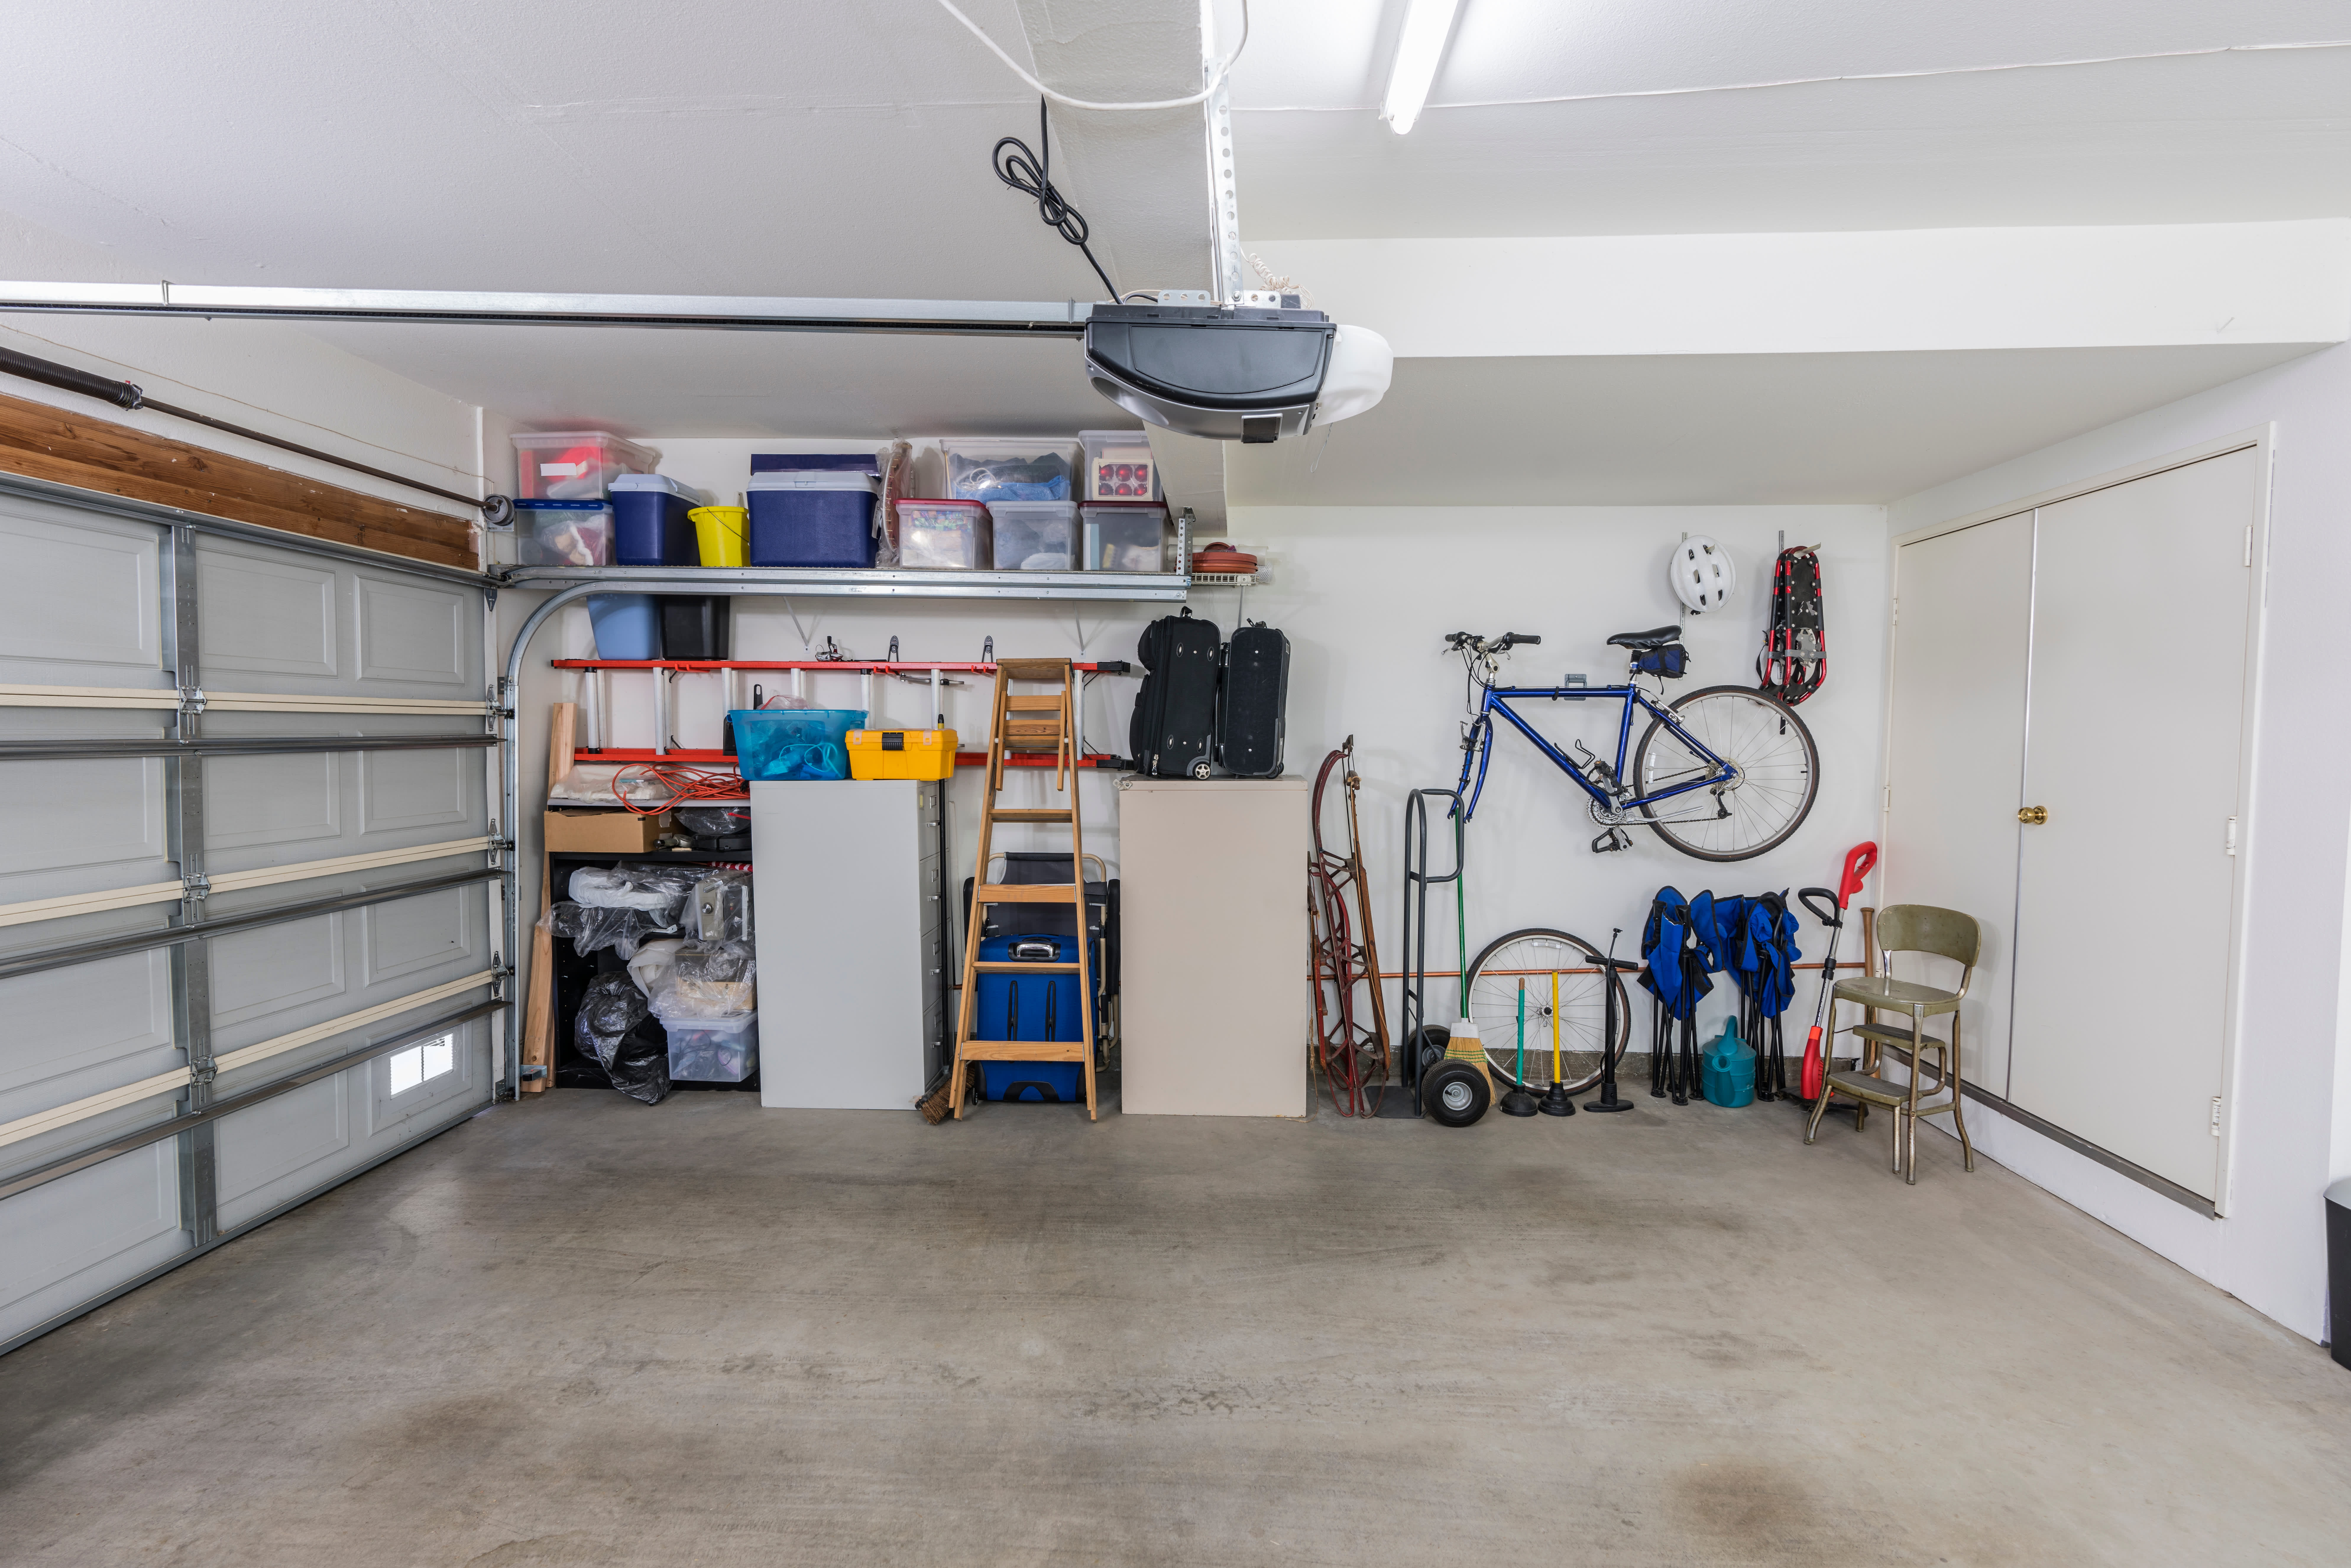 27 Genius Garage Storage Ideas to Get Your Gear in Order  Garage storage  organization, Cleaning supplies organization, Garage storage